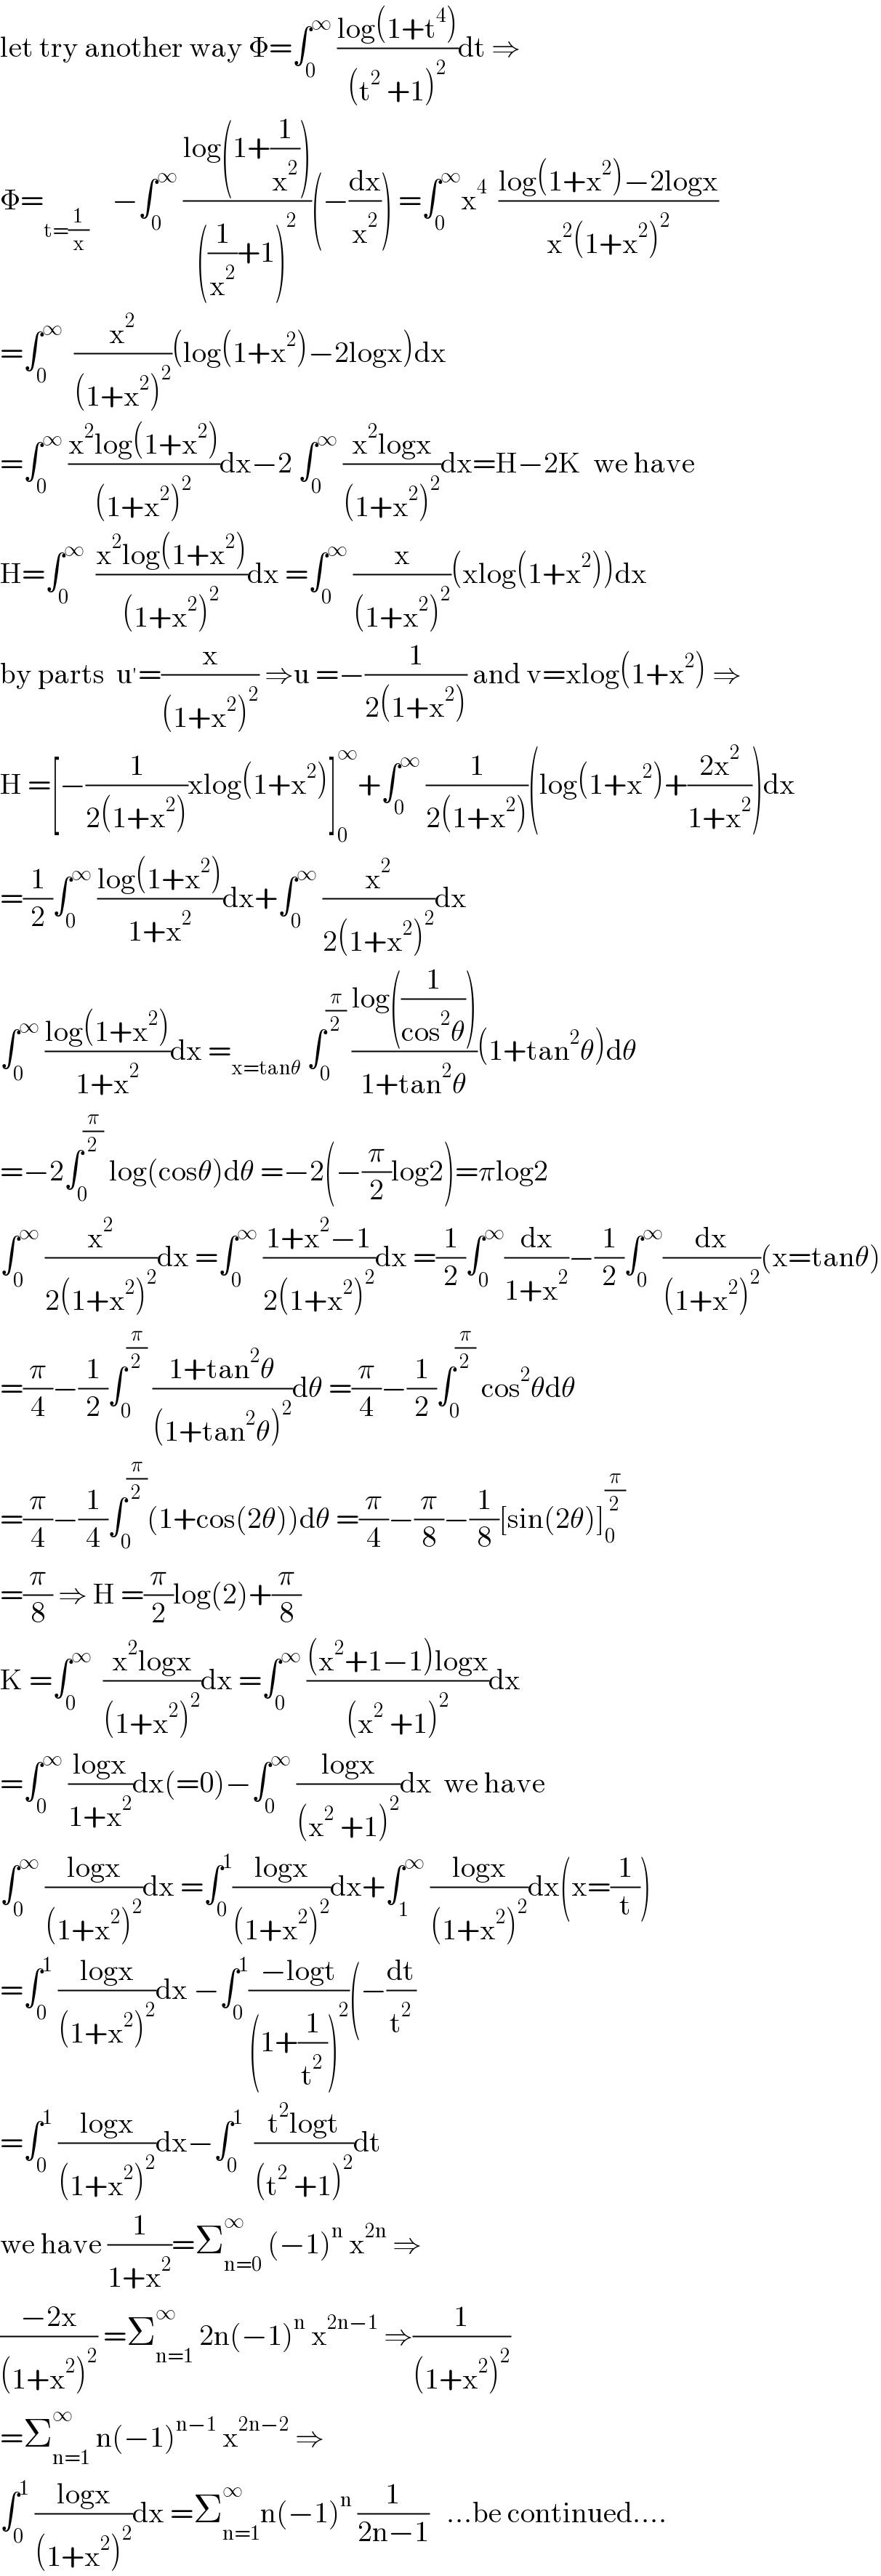 let try another way Φ=∫_0 ^∞  ((log(1+t^4 ))/((t^2  +1)^2 ))dt ⇒  Φ=_(t=(1/x))     −∫_0 ^∞  ((log(1+(1/x^2 )))/(((1/x^2 )+1)^2 ))(−(dx/x^2 )) =∫_0 ^∞ x^4   ((log(1+x^2 )−2logx)/(x^2 (1+x^2 )^2 ))  =∫_0 ^∞   (x^2 /((1+x^2 )^2 ))(log(1+x^2 )−2logx)dx  =∫_0 ^∞  ((x^2 log(1+x^2 ))/((1+x^2 )^2 ))dx−2 ∫_0 ^∞  ((x^2 logx)/((1+x^2 )^2 ))dx=H−2K  we have  H=∫_0 ^∞   ((x^2 log(1+x^2 ))/((1+x^2 )^2 ))dx =∫_0 ^∞  (x/((1+x^2 )^2 ))(xlog(1+x^2 ))dx  by parts  u^′ =(x/((1+x^2 )^2 )) ⇒u =−(1/(2(1+x^2 ))) and v=xlog(1+x^2 ) ⇒  H =[−(1/(2(1+x^2 )))xlog(1+x^2 )]_0 ^∞ +∫_0 ^∞  (1/(2(1+x^2 )))(log(1+x^2 )+((2x^2 )/(1+x^2 )))dx  =(1/2)∫_0 ^∞  ((log(1+x^2 ))/(1+x^2 ))dx+∫_0 ^∞  (x^2 /(2(1+x^2 )^2 ))dx  ∫_0 ^∞  ((log(1+x^2 ))/(1+x^2 ))dx =_(x=tanθ)  ∫_0 ^(π/2)  ((log((1/(cos^2 θ))))/(1+tan^2 θ))(1+tan^2 θ)dθ  =−2∫_0 ^(π/2)  log(cosθ)dθ =−2(−(π/2)log2)=πlog2  ∫_0 ^∞  (x^2 /(2(1+x^2 )^2 ))dx =∫_0 ^∞  ((1+x^2 −1)/(2(1+x^2 )^2 ))dx =(1/2)∫_0 ^∞ (dx/(1+x^2 ))−(1/2)∫_0 ^∞ (dx/((1+x^2 )^2 ))(x=tanθ)  =(π/4)−(1/2)∫_0 ^(π/2)  ((1+tan^2 θ)/((1+tan^2 θ)^2 ))dθ =(π/4)−(1/2)∫_0 ^(π/2)  cos^2 θdθ  =(π/4)−(1/4)∫_0 ^(π/2) (1+cos(2θ))dθ =(π/4)−(π/8)−(1/8)[sin(2θ)]_0 ^(π/2)   =(π/8) ⇒ H =(π/2)log(2)+(π/8)  K =∫_0 ^∞   ((x^2 logx)/((1+x^2 )^2 ))dx =∫_0 ^∞  (((x^2 +1−1)logx)/((x^2  +1)^2 ))dx  =∫_0 ^∞  ((logx)/(1+x^2 ))dx(=0)−∫_0 ^∞  ((logx)/((x^2  +1)^2 ))dx  we have  ∫_0 ^∞  ((logx)/((1+x^2 )^2 ))dx =∫_0 ^1 ((logx)/((1+x^2 )^2 ))dx+∫_1 ^∞  ((logx)/((1+x^2 )^2 ))dx(x=(1/t))  =∫_0 ^1  ((logx)/((1+x^2 )^2 ))dx −∫_0 ^1 ((−logt)/((1+(1/t^2 ))^2 ))(−(dt/t^2 )  =∫_0 ^1  ((logx)/((1+x^2 )^2 ))dx−∫_0 ^1   ((t^2 logt)/((t^2  +1)^2 ))dt  we have (1/(1+x^2 ))=Σ_(n=0) ^∞  (−1)^n  x^(2n)  ⇒  ((−2x)/((1+x^2 )^2 )) =Σ_(n=1) ^∞  2n(−1)^n  x^(2n−1)  ⇒(1/((1+x^2 )^2 ))  =Σ_(n=1) ^∞  n(−1)^(n−1)  x^(2n−2)  ⇒  ∫_0 ^1  ((logx)/((1+x^2 )^2 ))dx =Σ_(n=1) ^∞ n(−1)^n  (1/(2n−1))   ...be continued....  